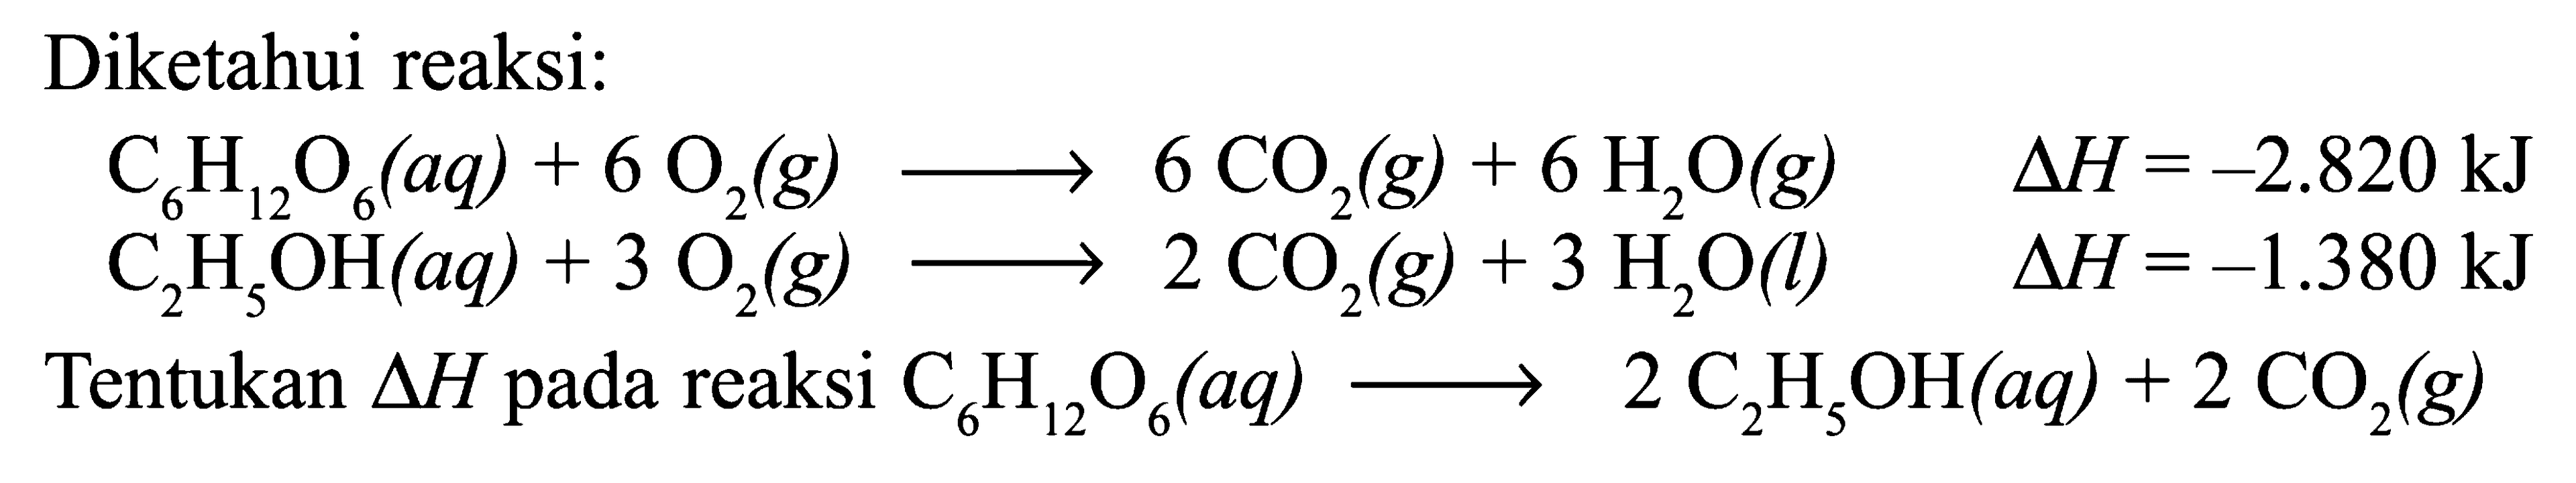 Diketahui reaksi: C6H12O6 (aq) + 6 O2 (g) -> 6 CO2 (g) + 6 H2O (g) delta H = -2.820 kJ C2H5OH (aq) + 3 O2 (g) -> 2 CO2 (g) + 3 H2O (l) delta H = -1.380 kJ Tentukan delta H pada reaksi C6H12O6 (aq) -> 2 C2H5OH (aq) + 2 CO2 (g)